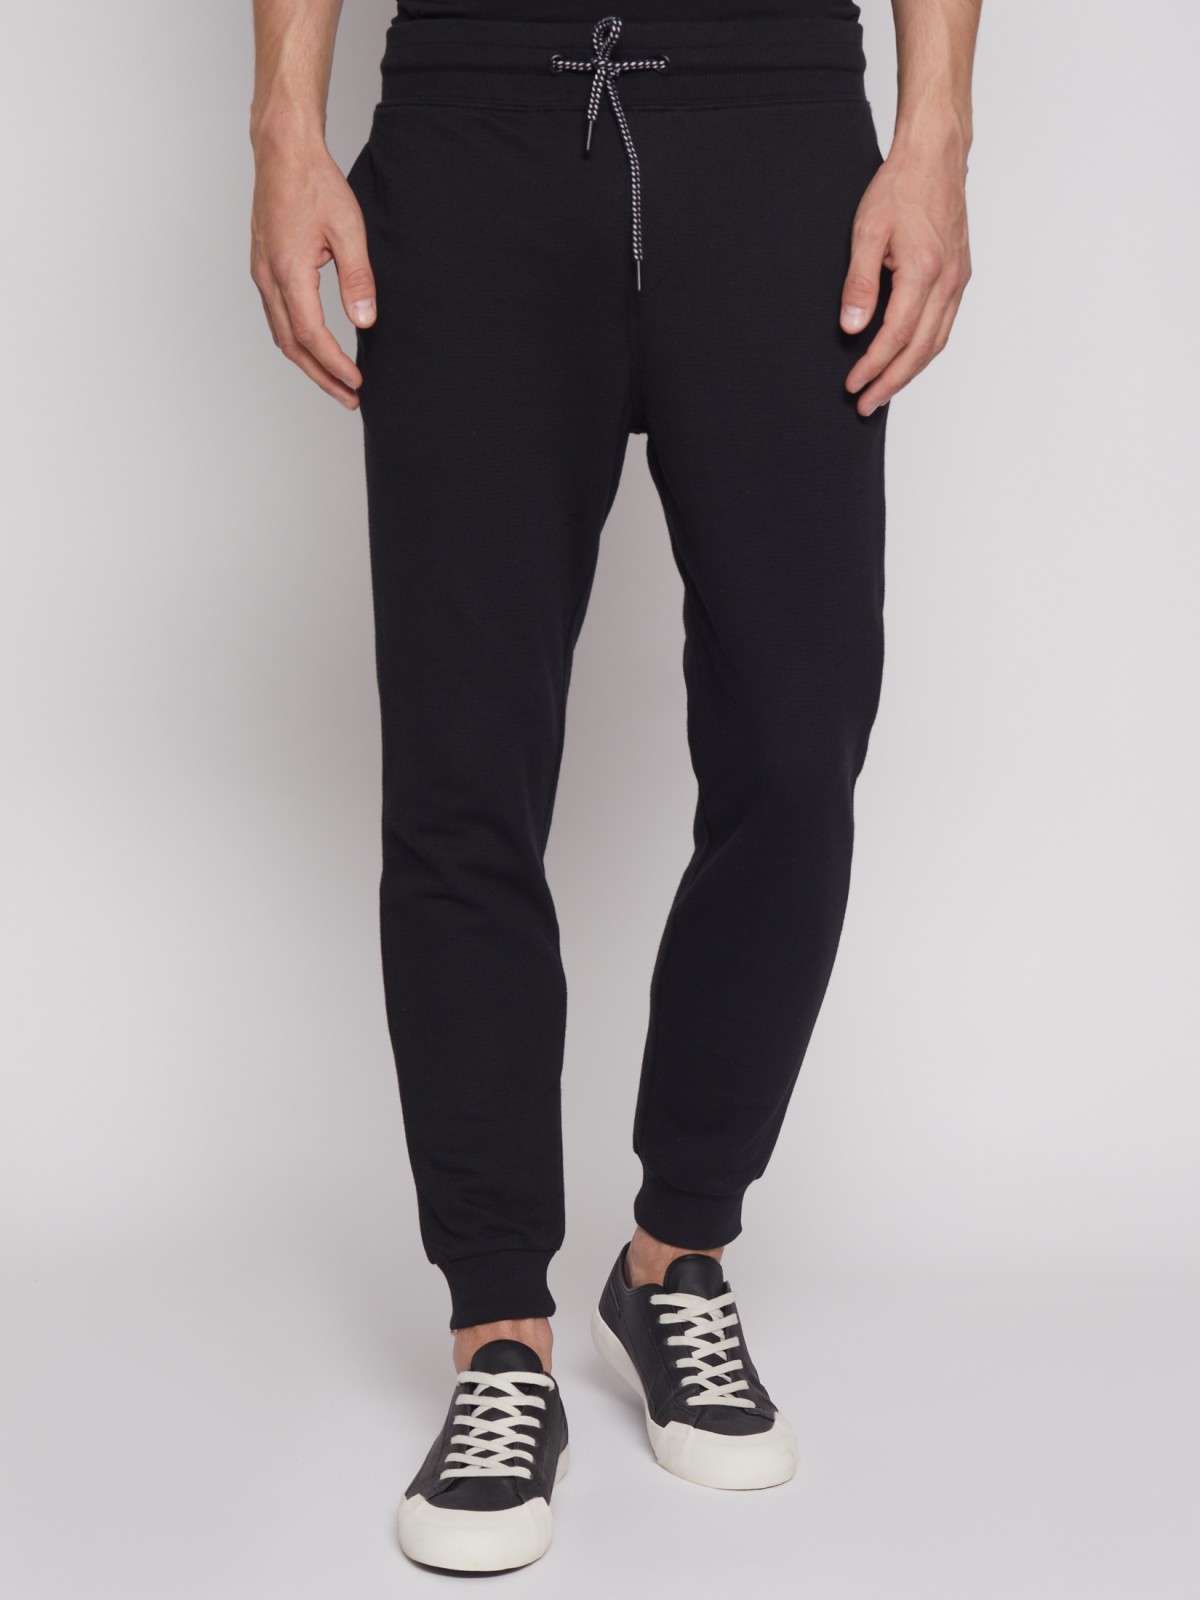 Спортивные брюки-джоггеры zolla 21231762F012, цвет черный, размер S - фото 2